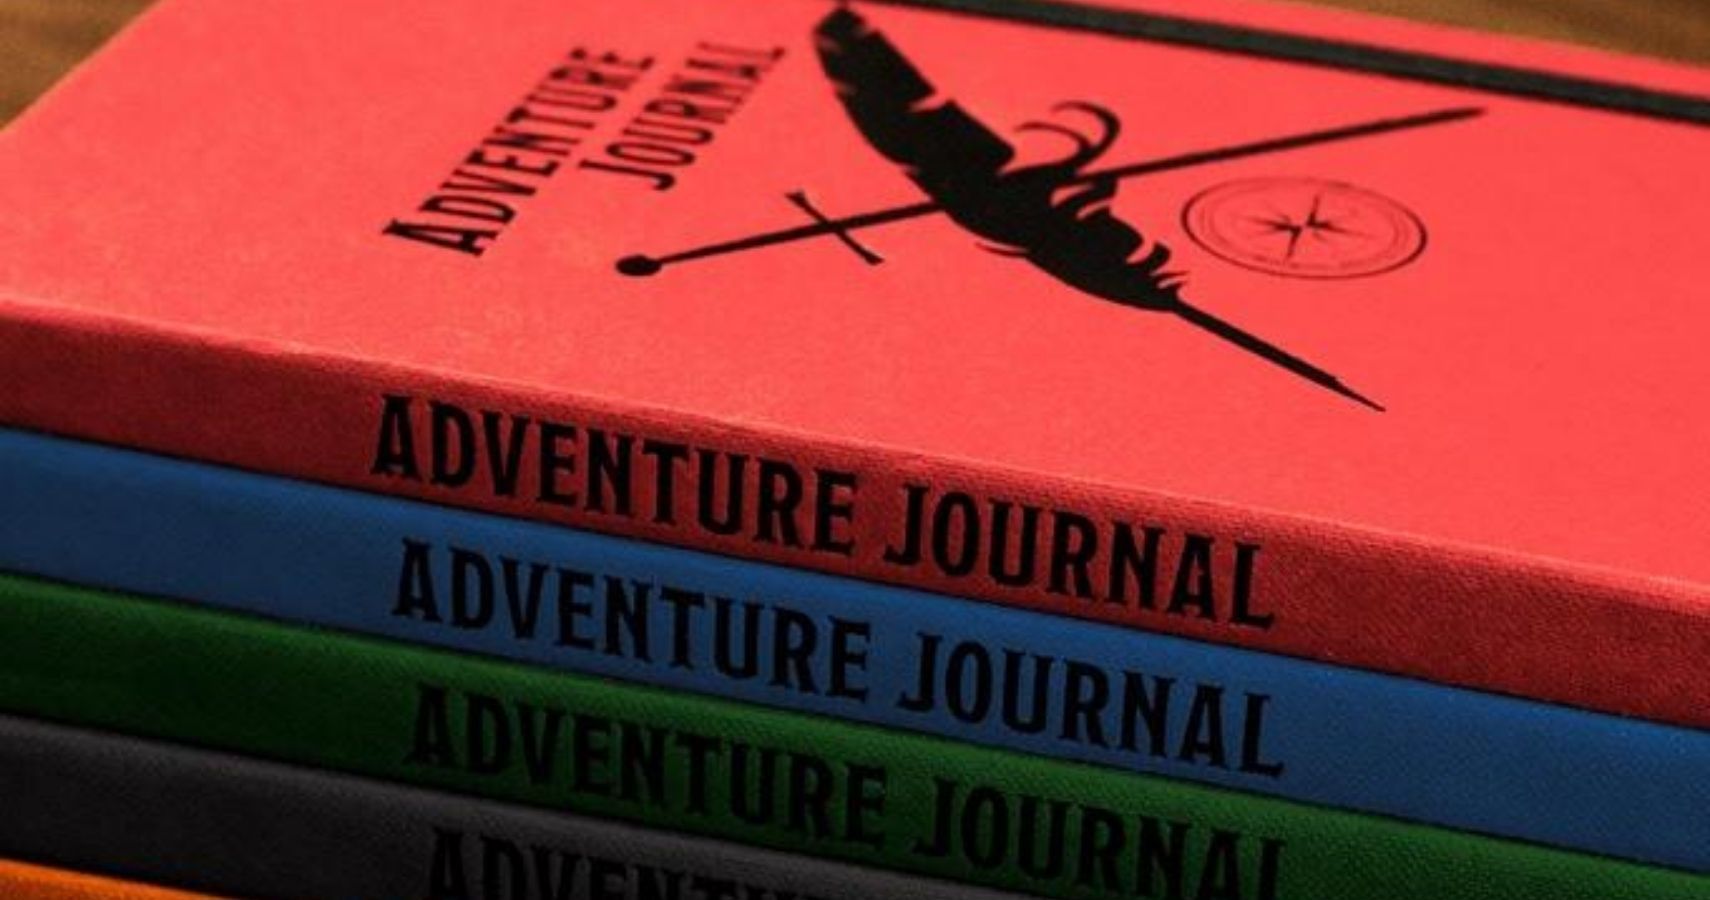 Scott Kurtz Adventure Journal Kickstarter feature image